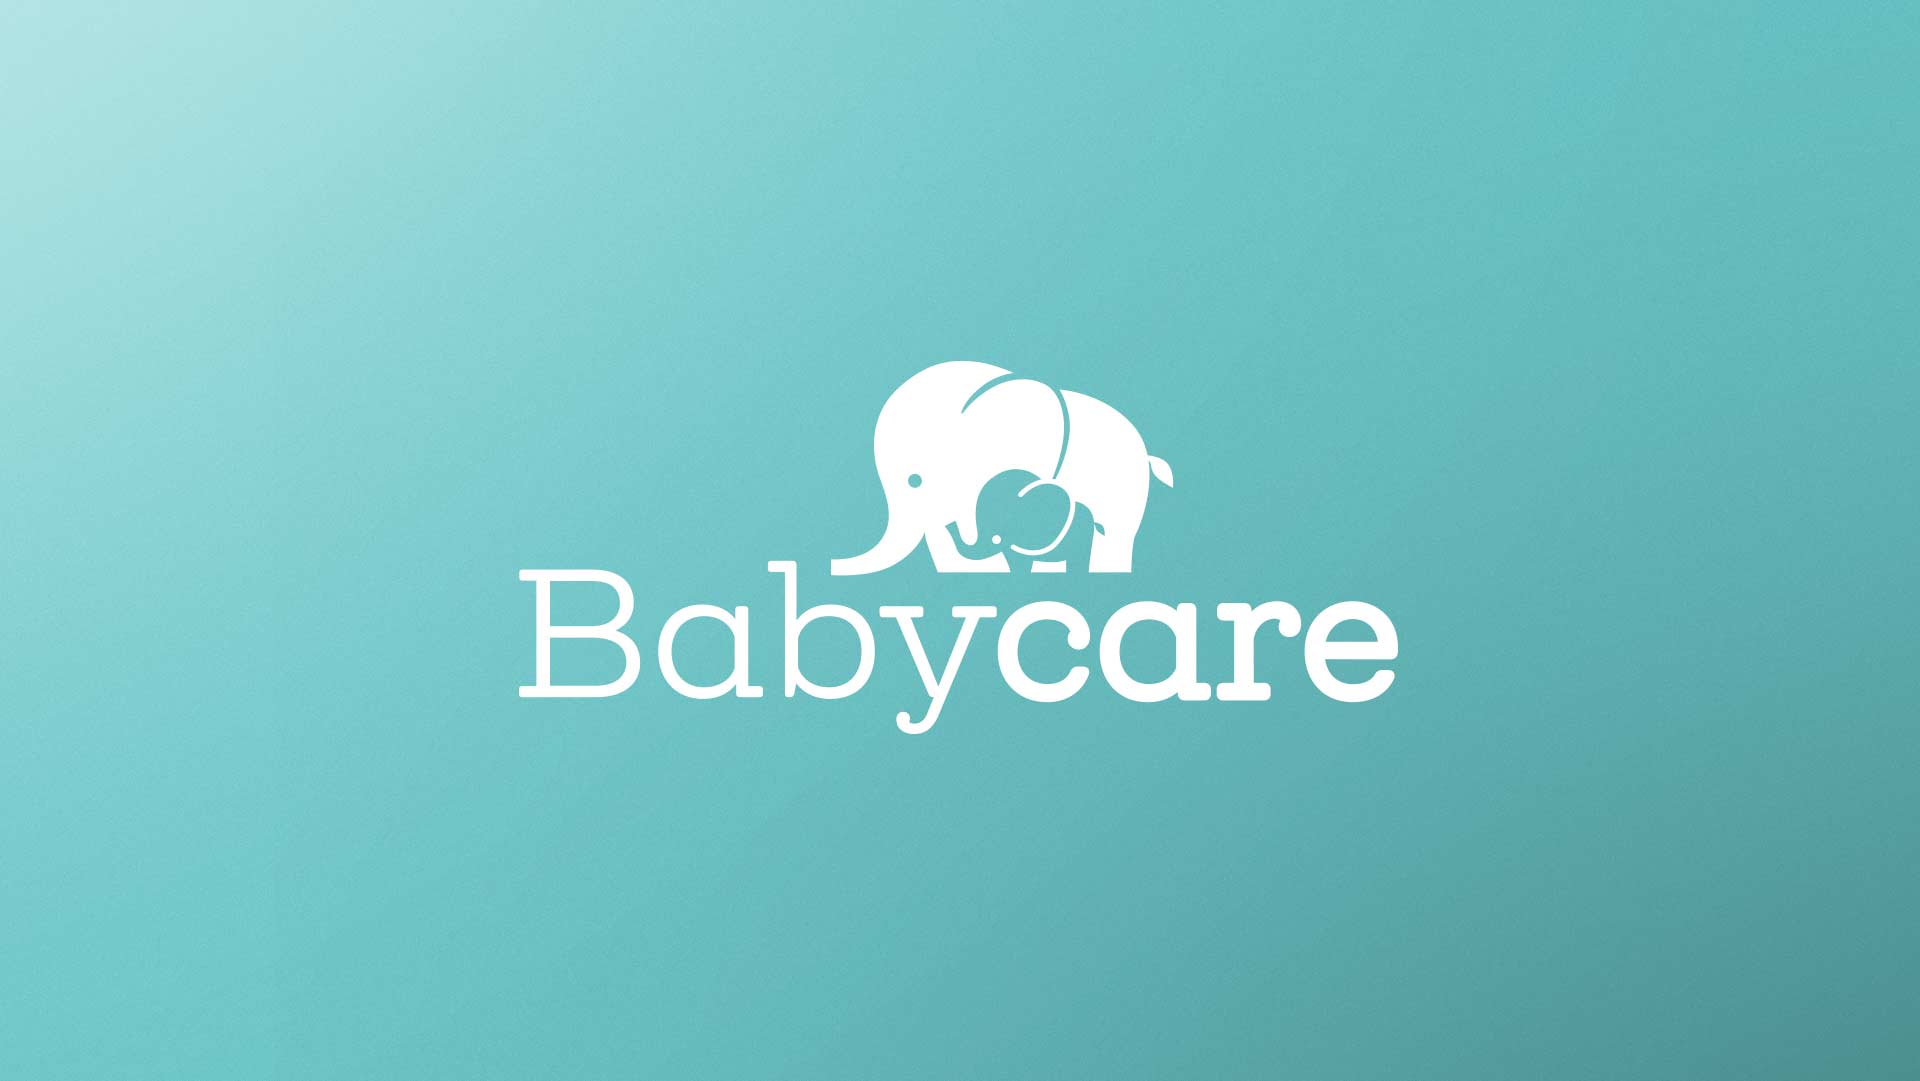 babycare creación de marca y empaques